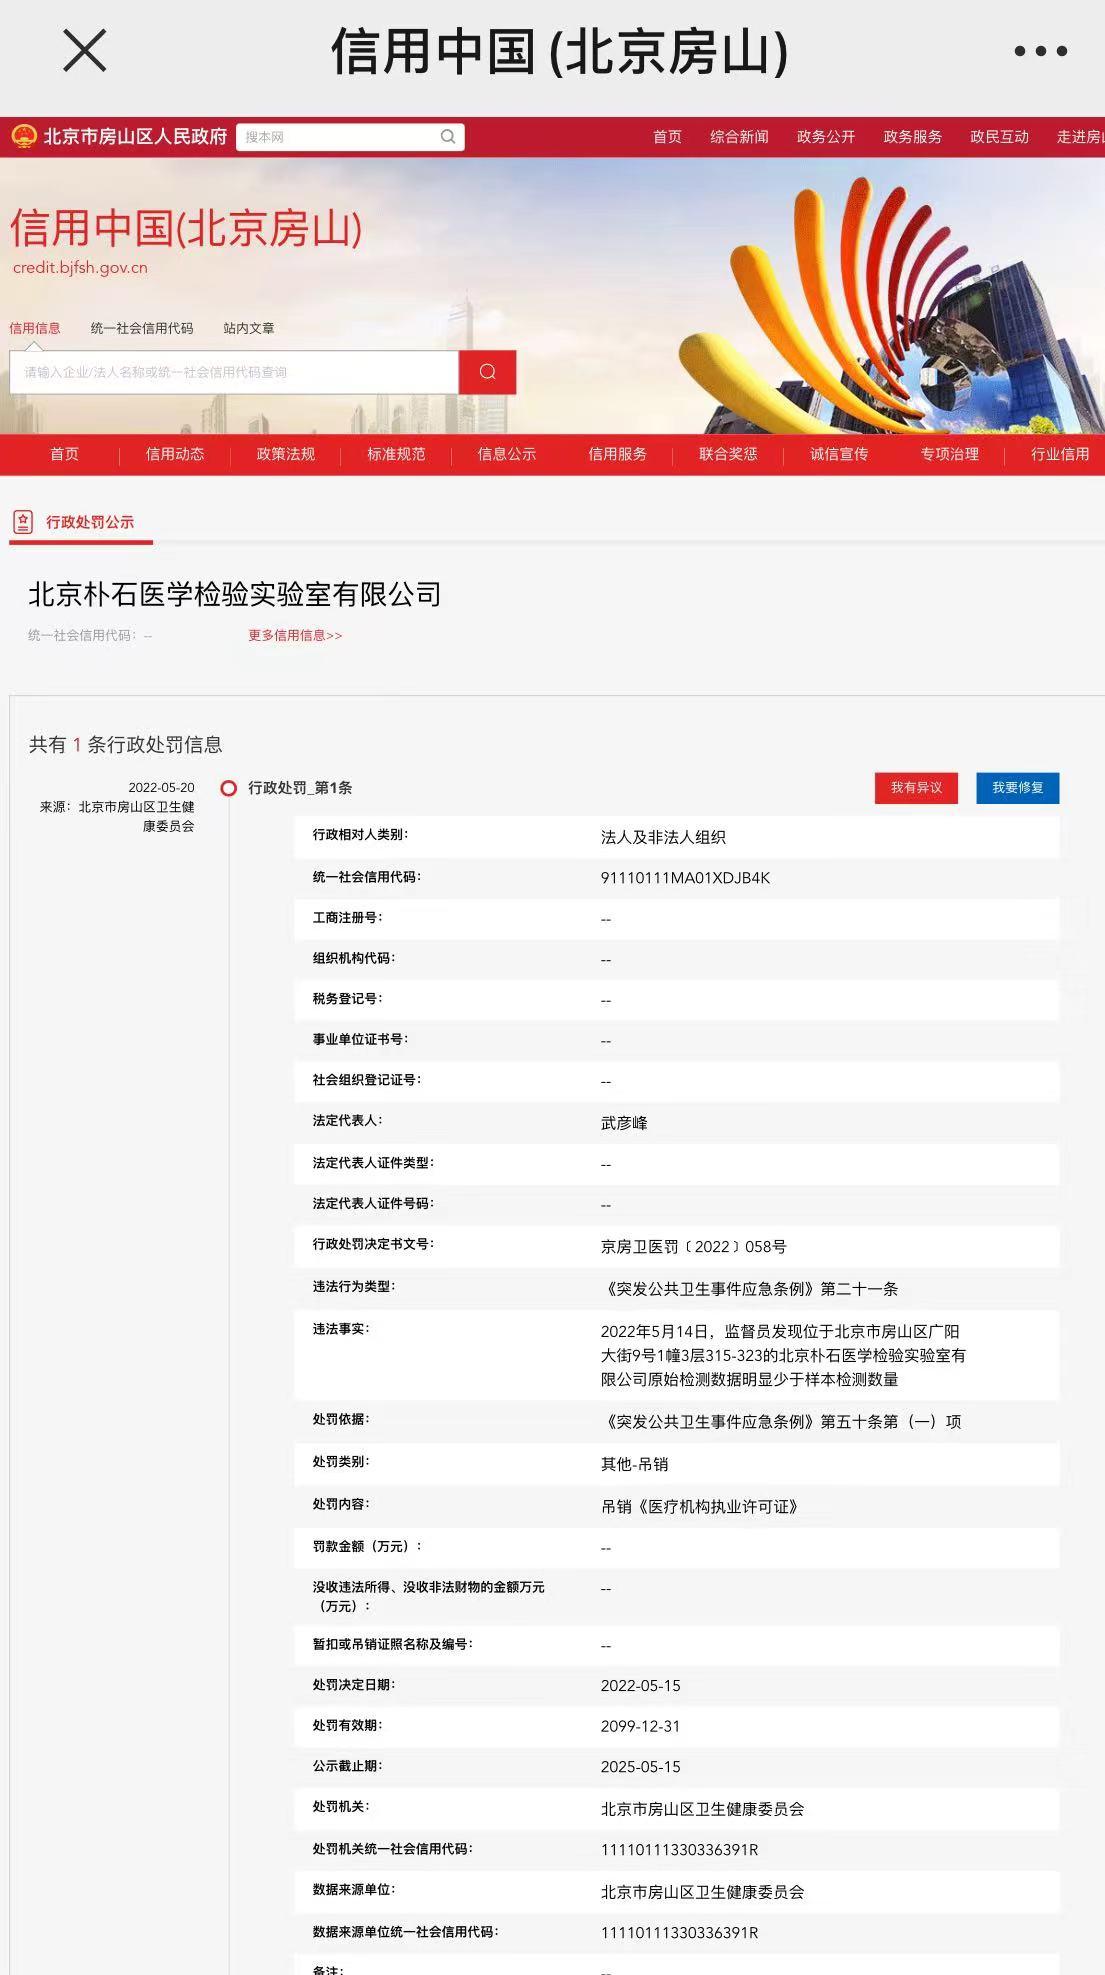 北京一检验实验室被吊销<font color="red">执业</font>许可证：原始检测数据少于样本数量